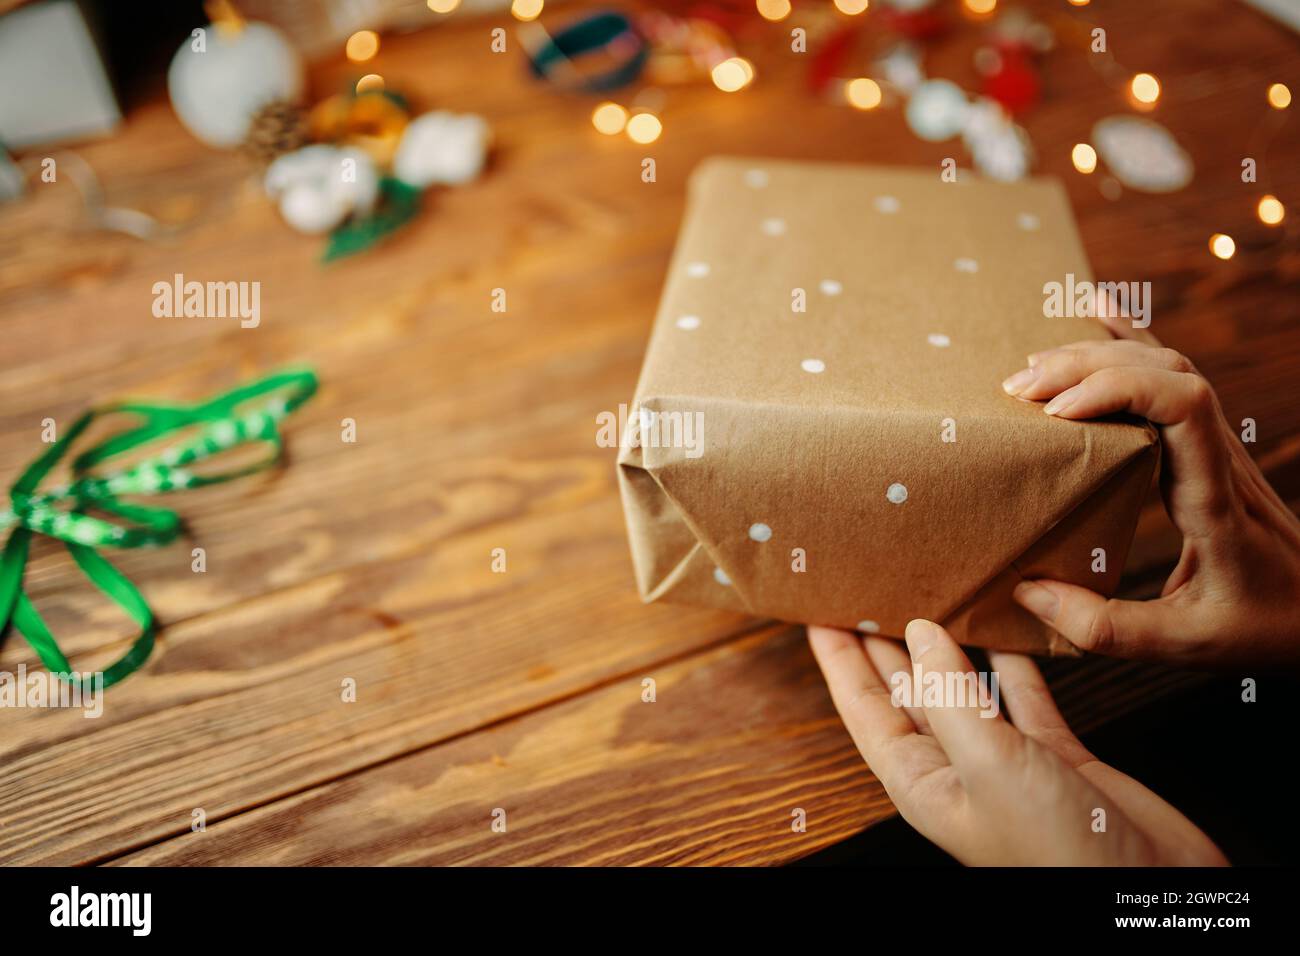 Nahaufnahme von Frauenhänden, die Weihnachtsgeschenke auf einem Holztisch verpacken. Geschenkpapier mit weißen Punkten. Farbbänder Licht Girlande und Neujahr Spielzeug auf dem Hintergrund. Festliche Atmosphäre. Stockfoto